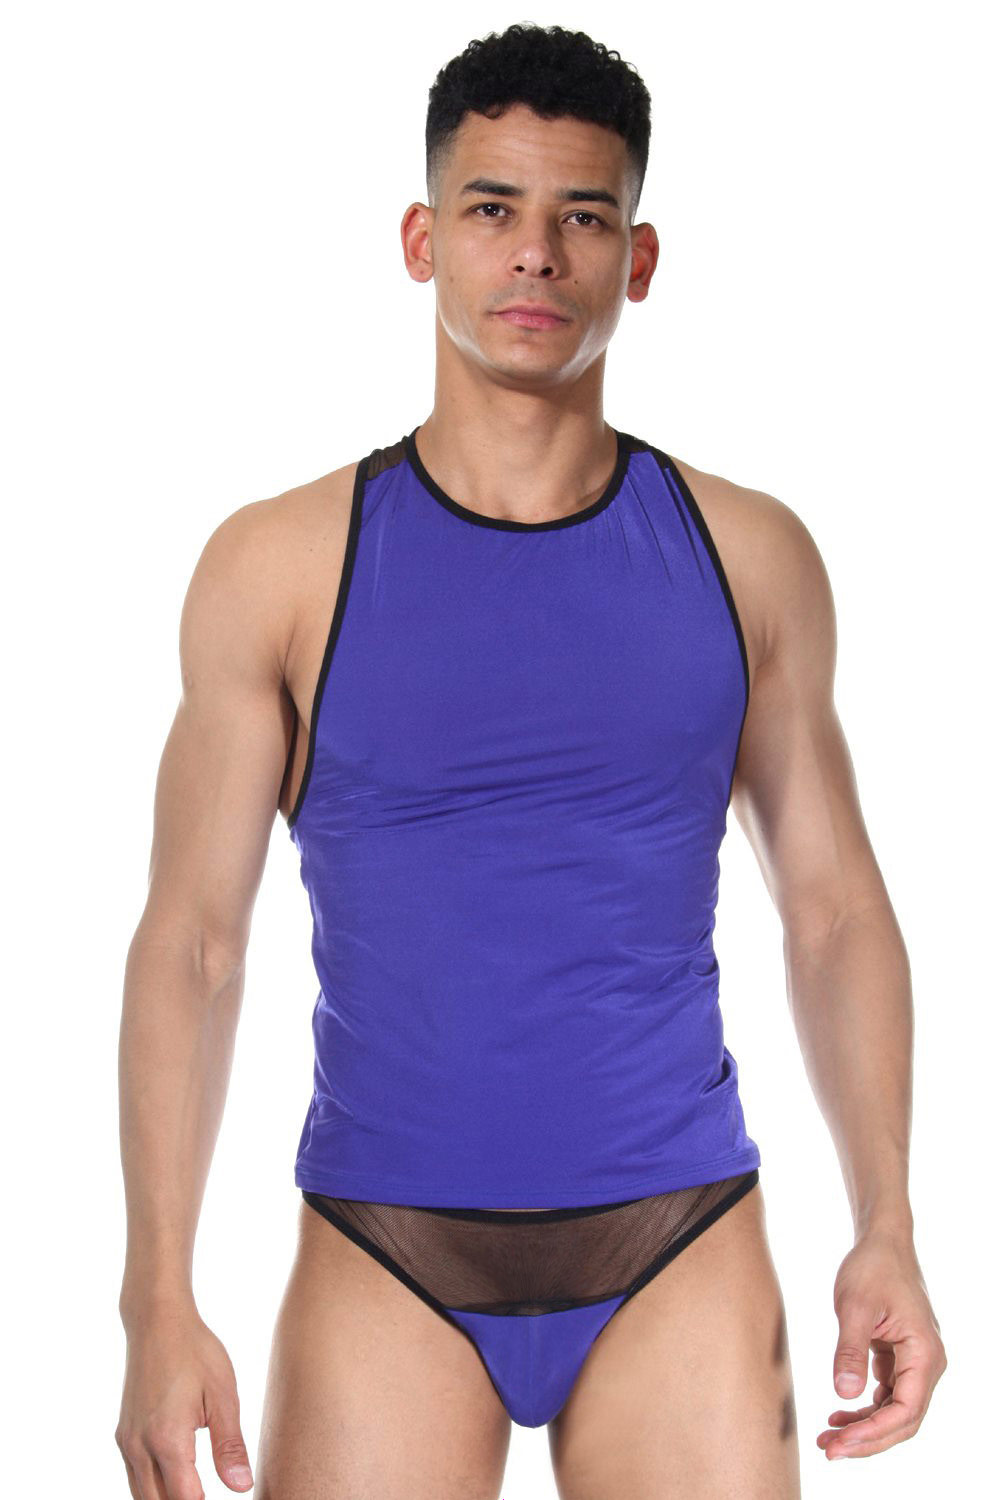 LA BLINQUE set thong and athletic shirt at oboy.com